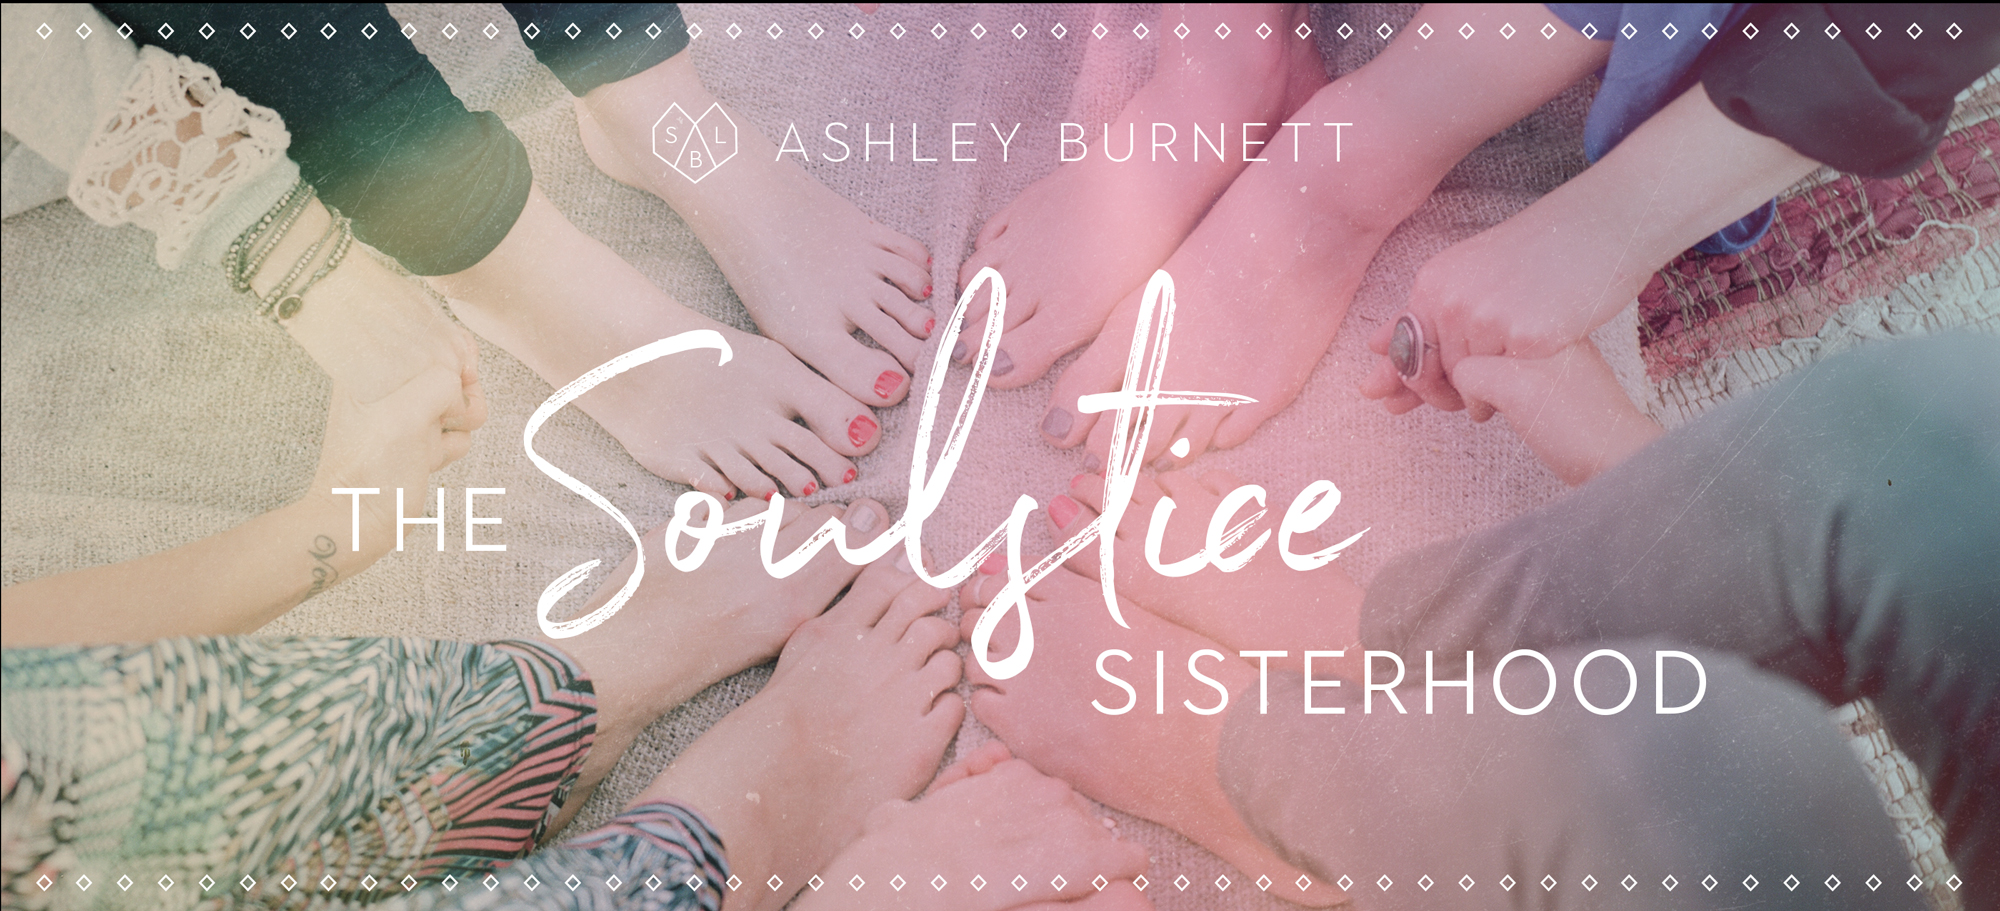 The Soulstice Sisterhood